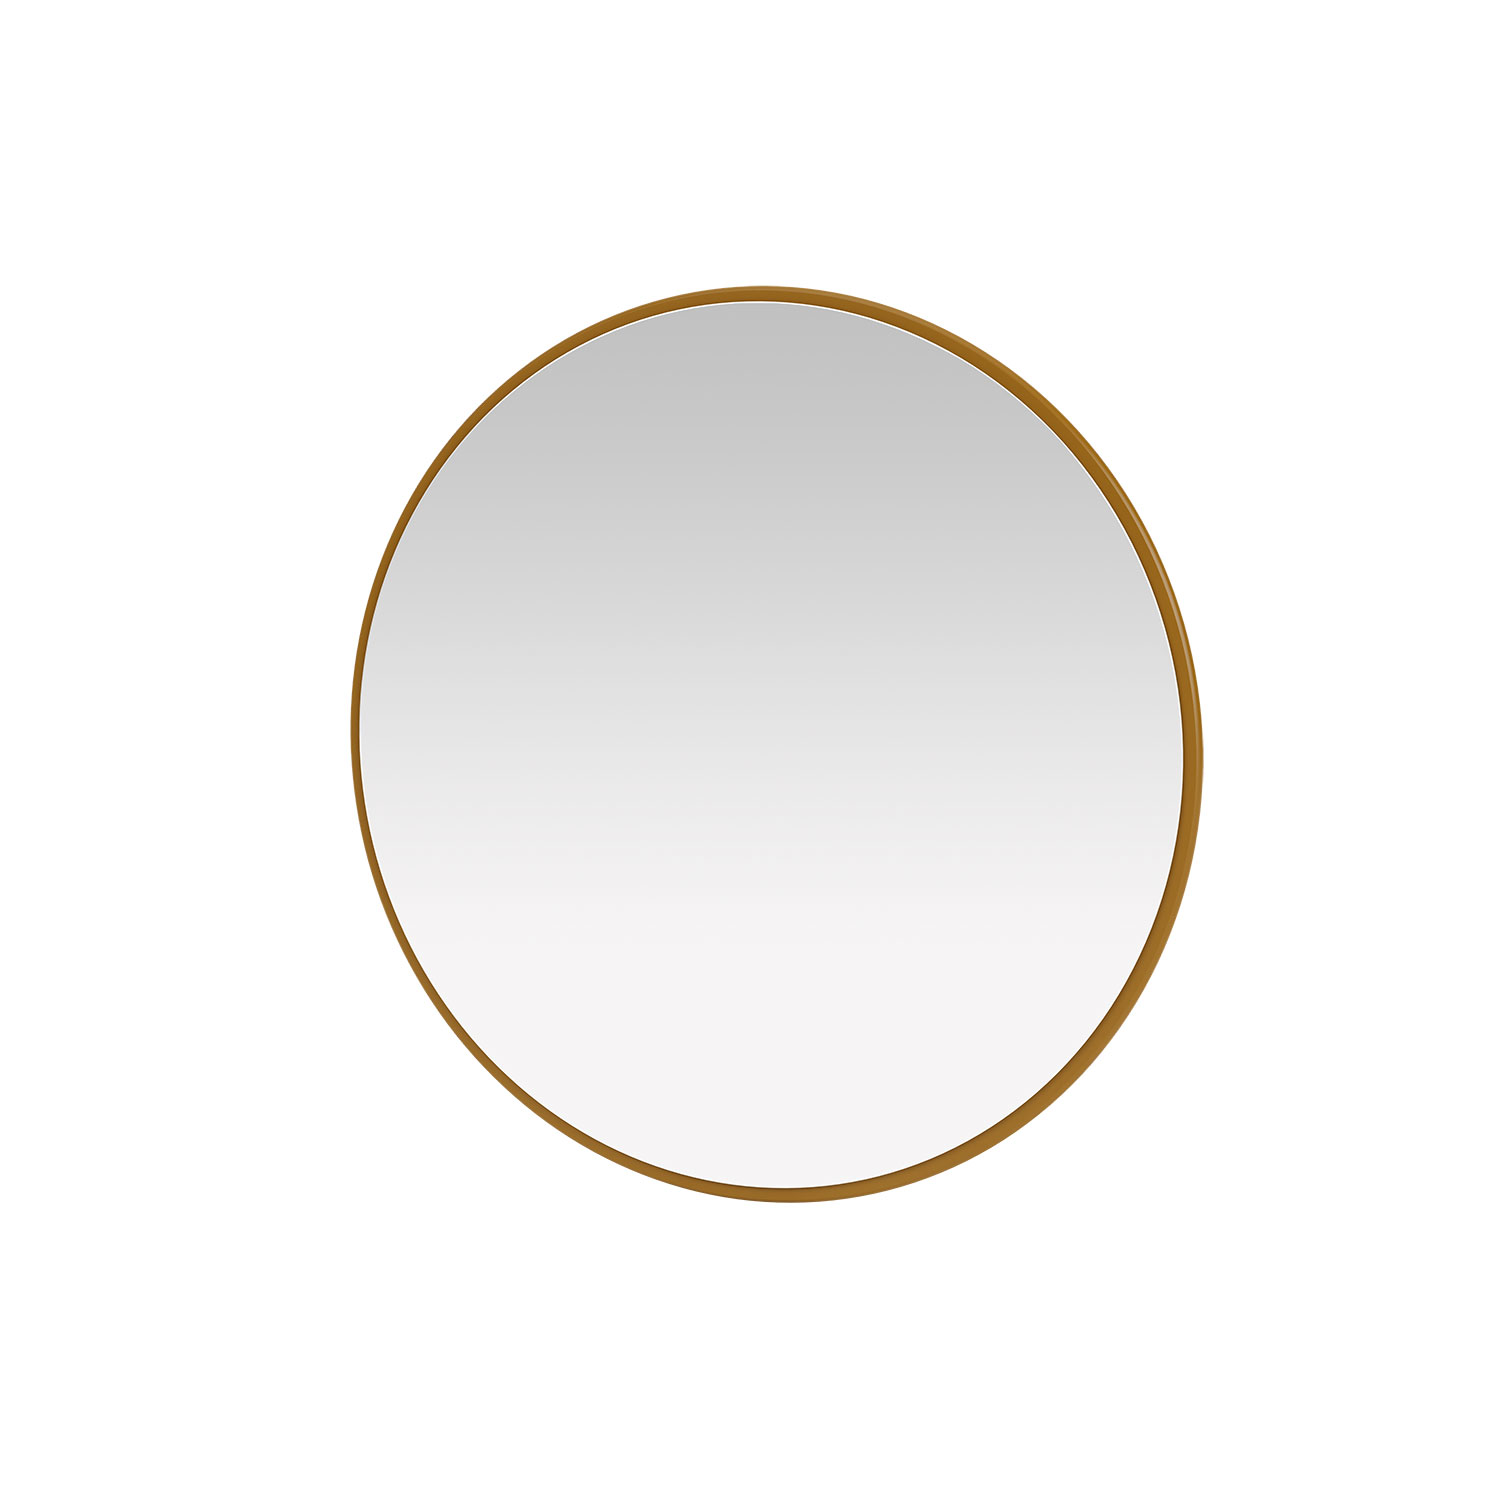 AROUND mirror, 11 colors